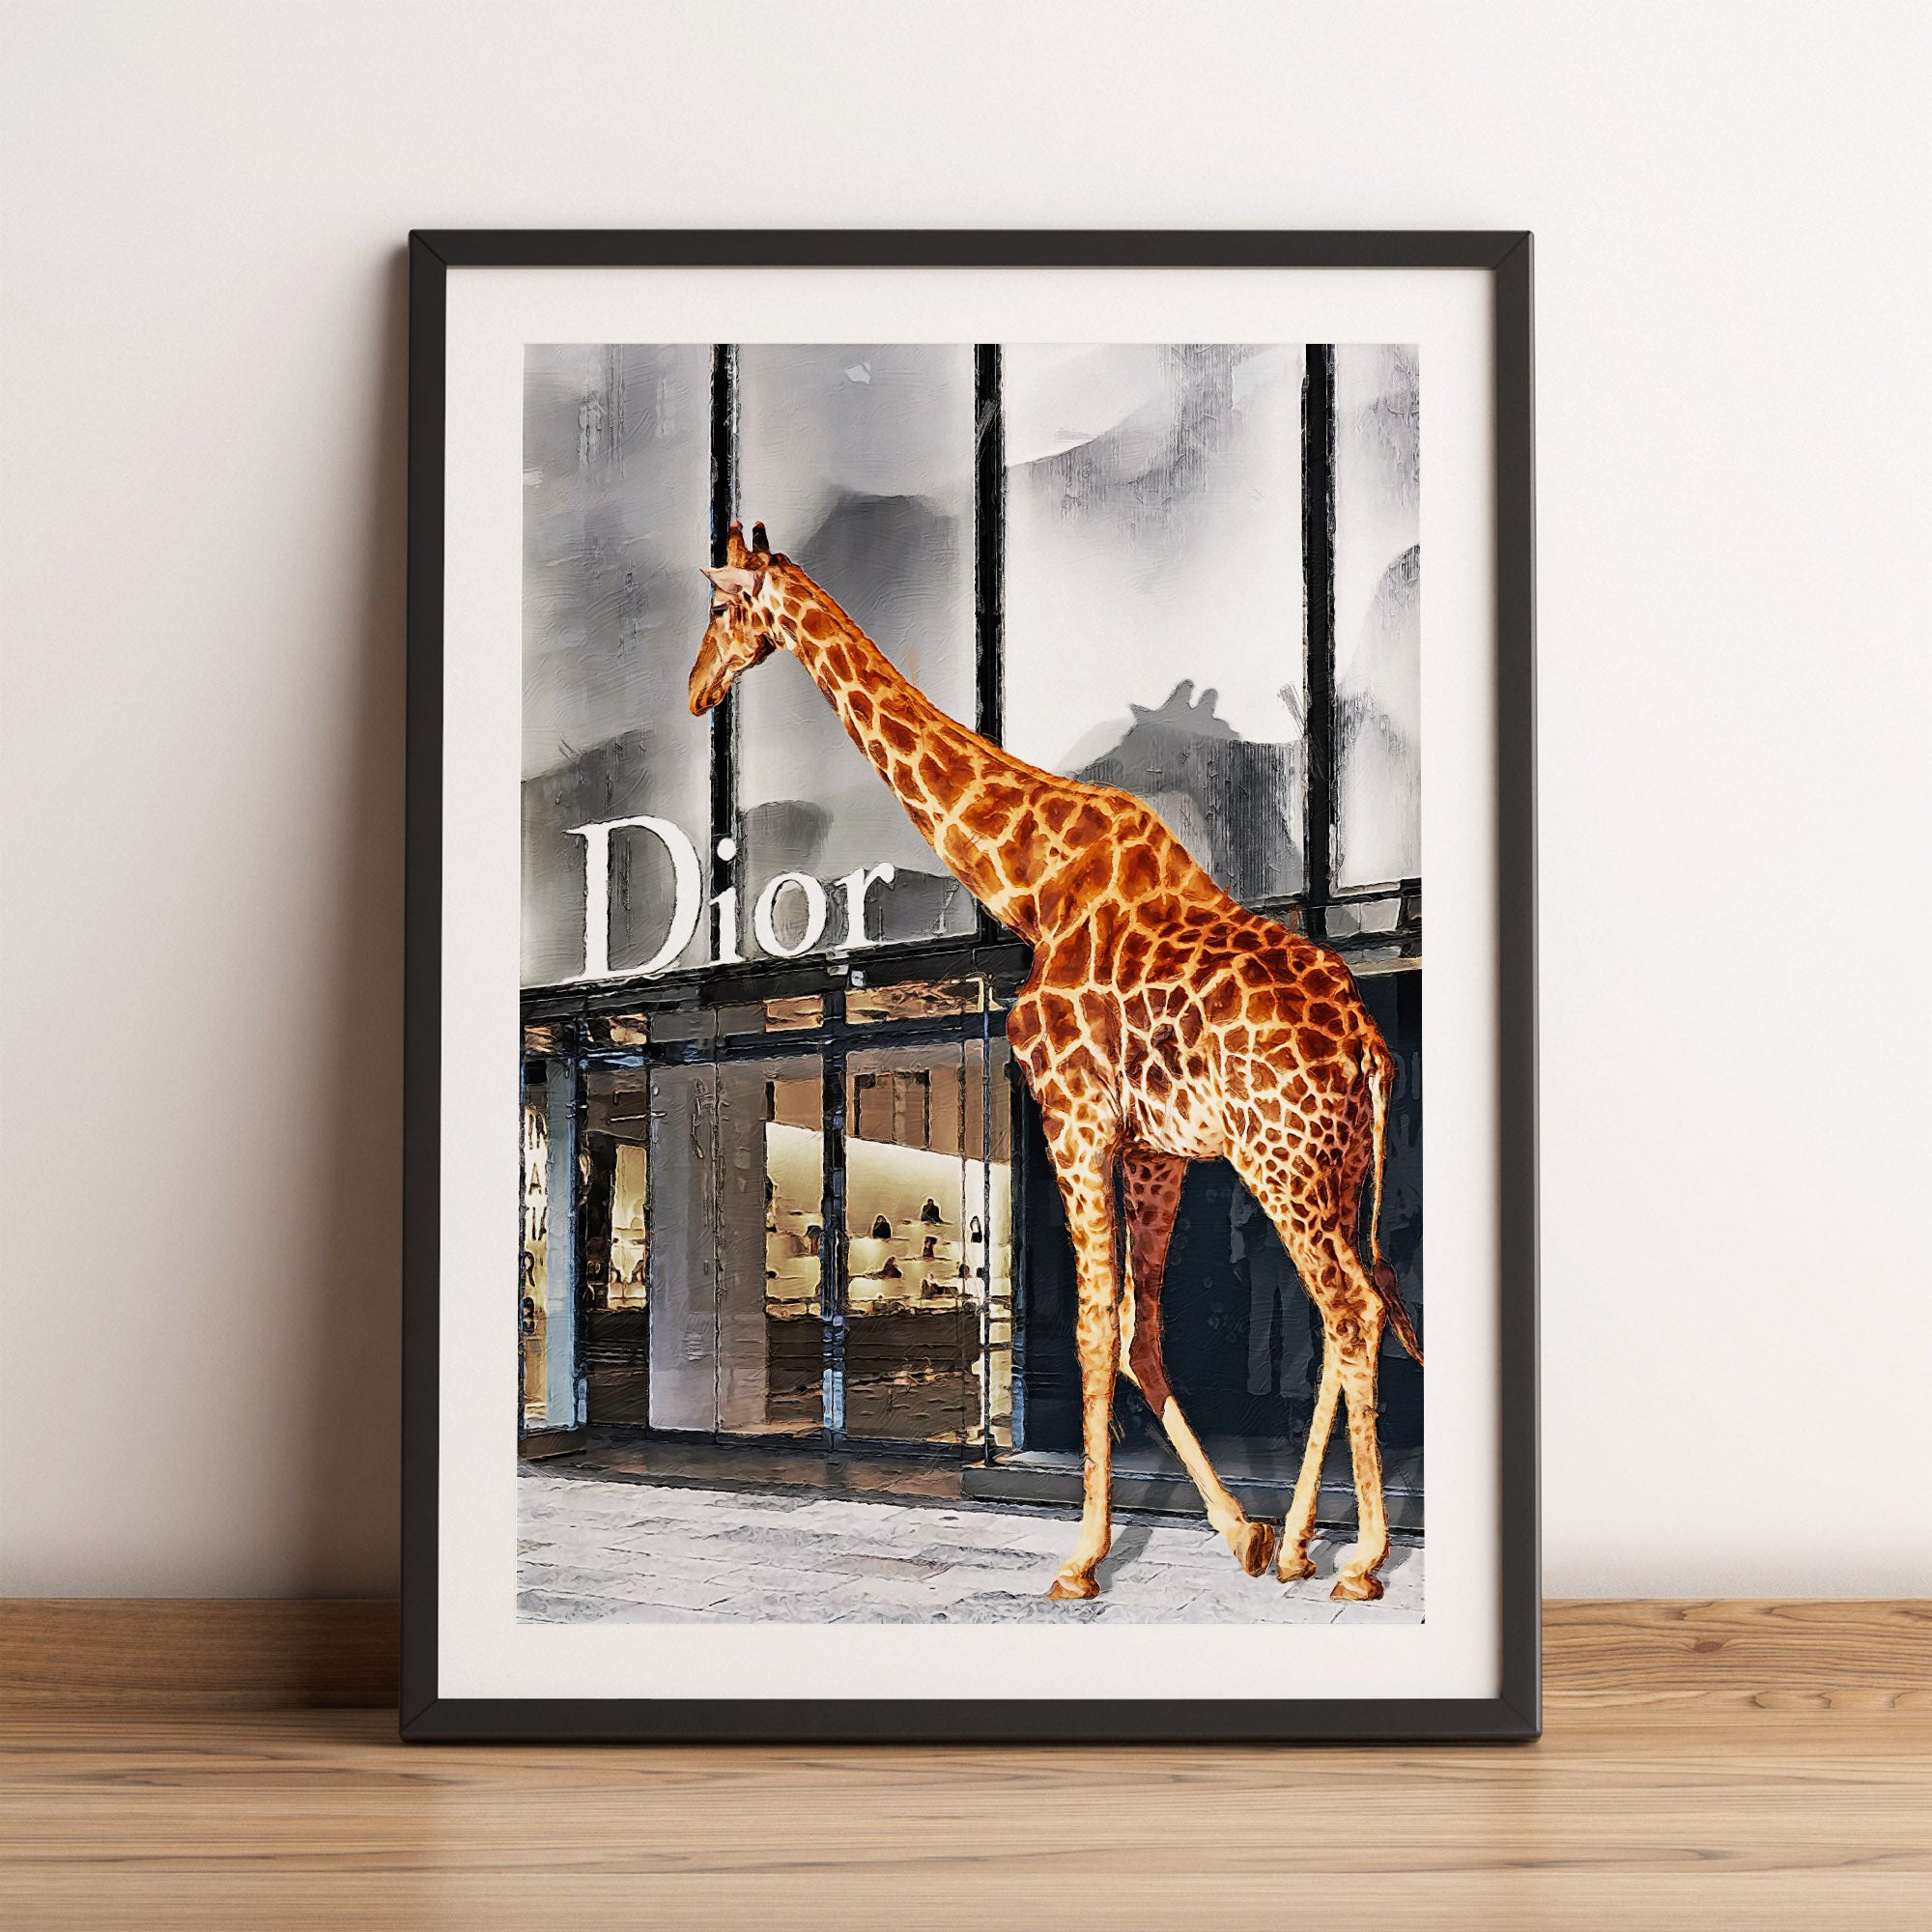 Dior giraffe art 